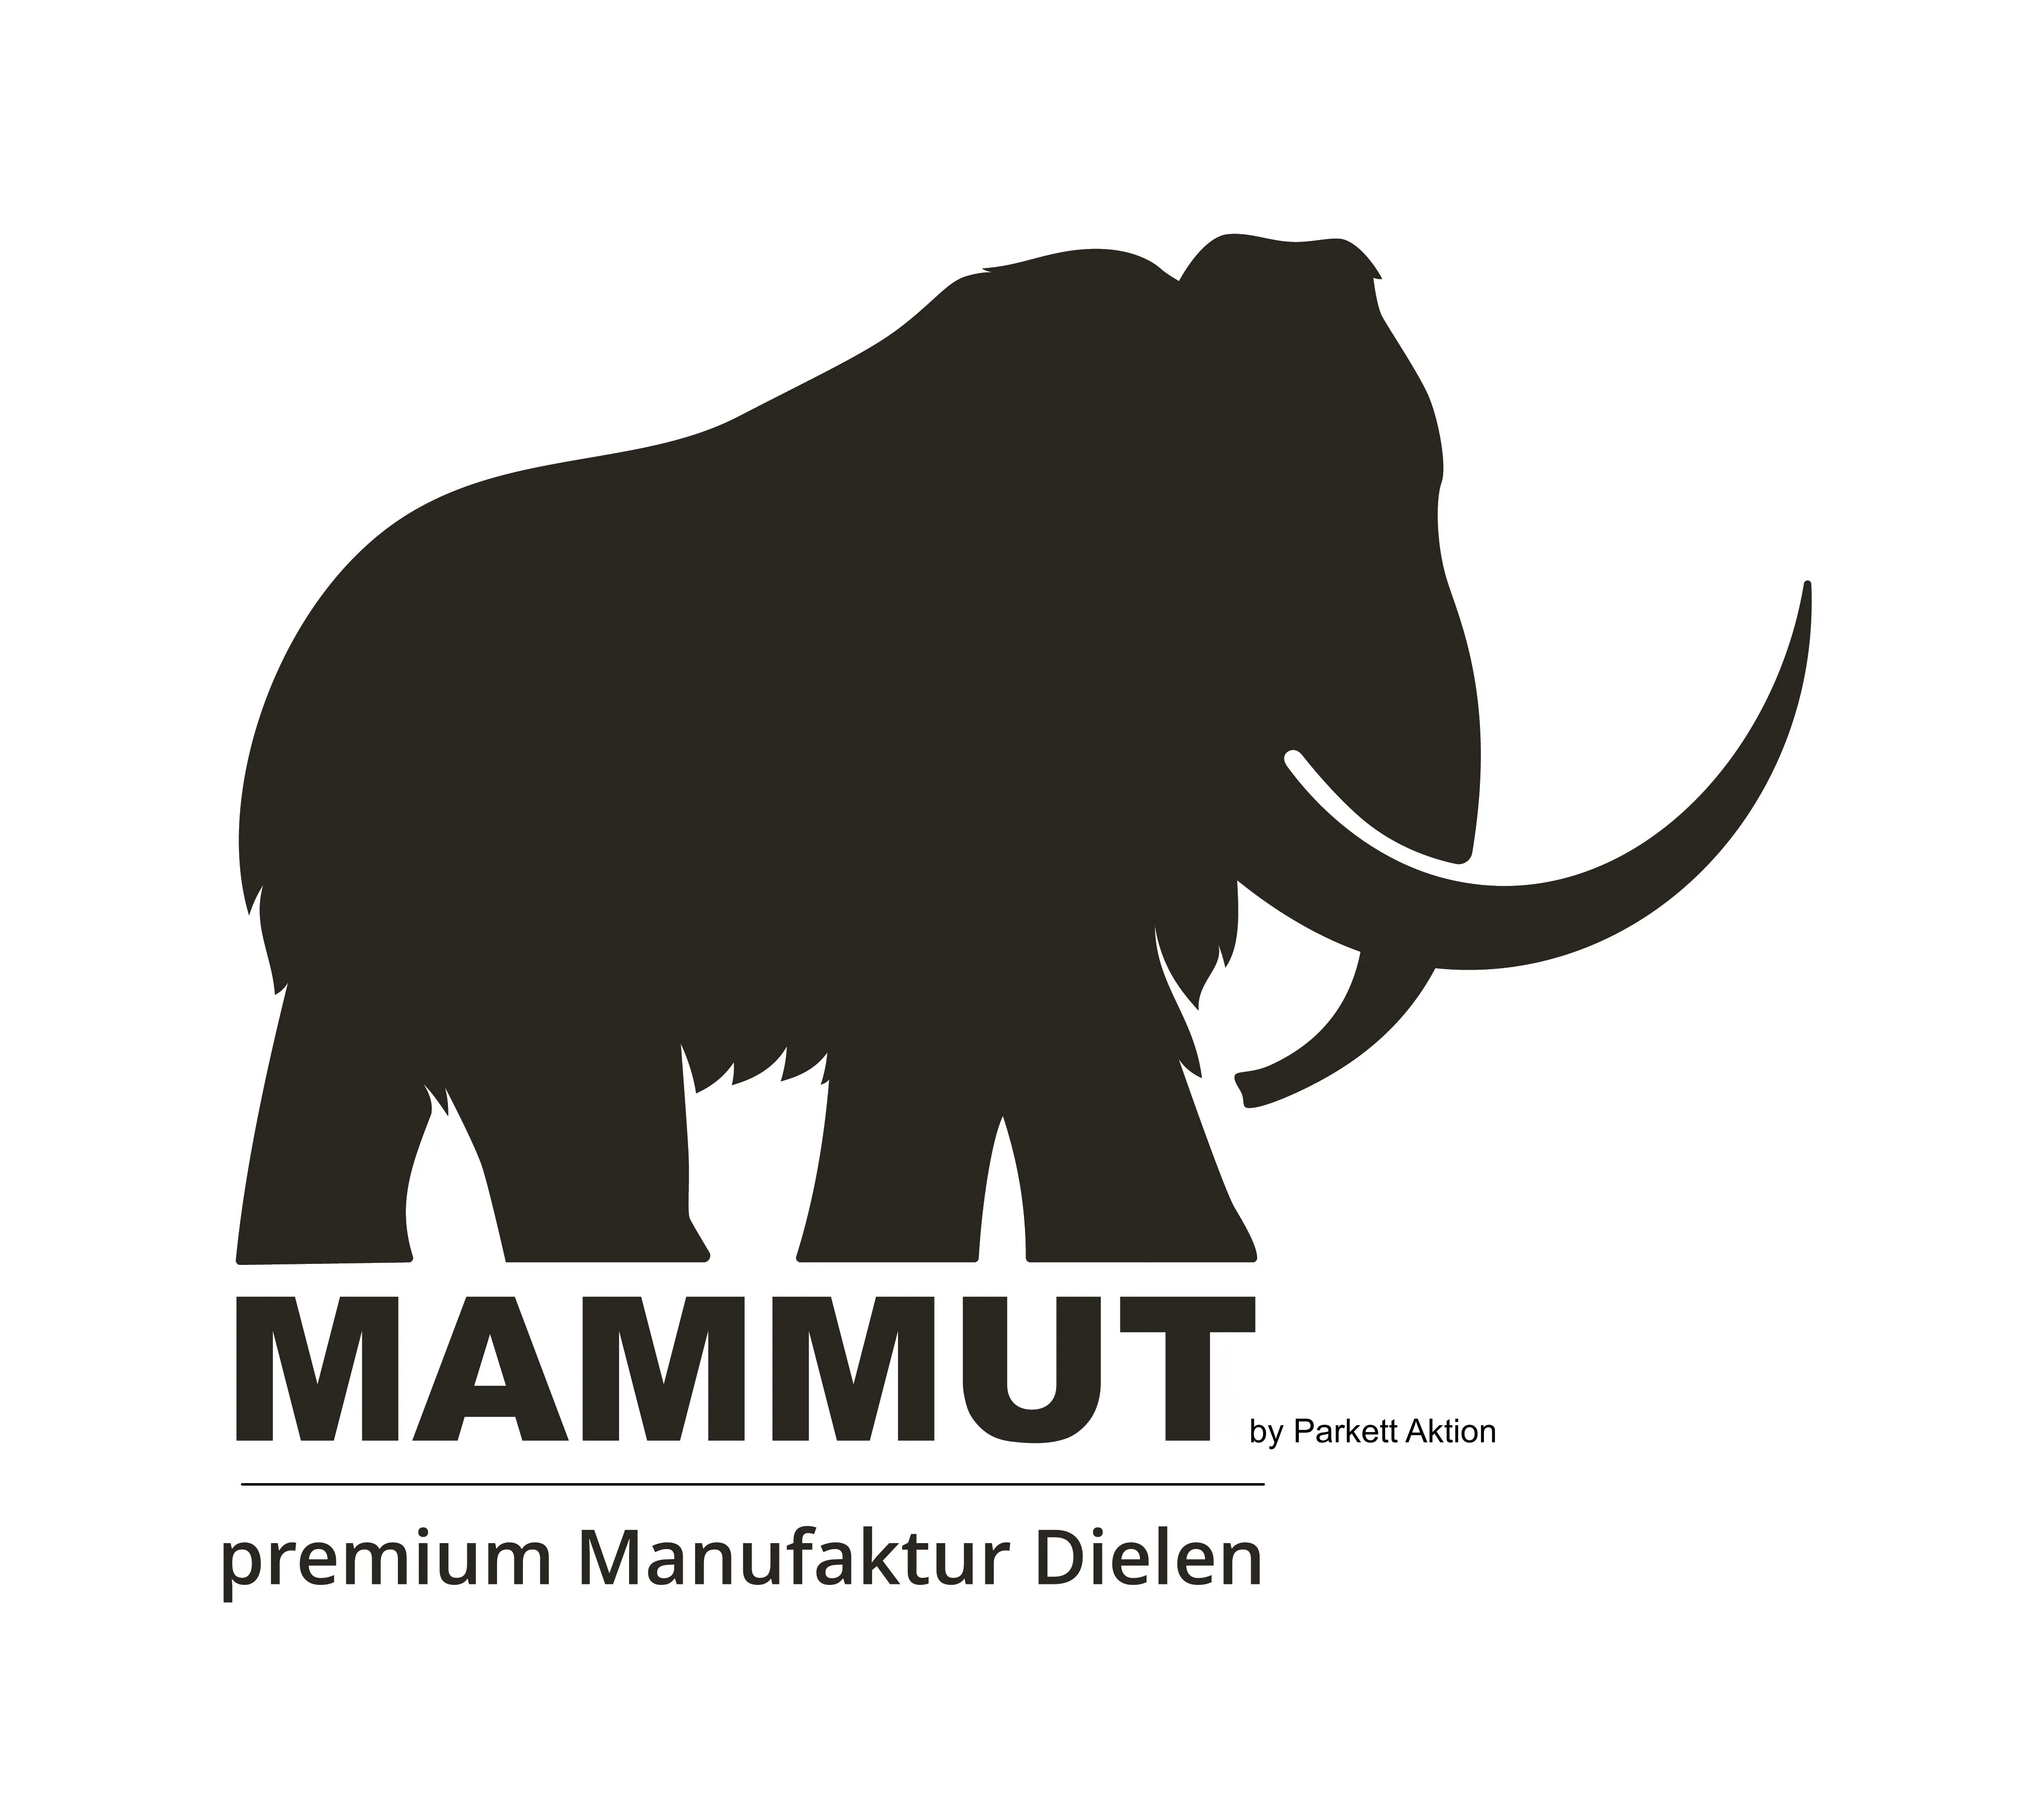 MAMMUT - premium Manufaktur Dielen